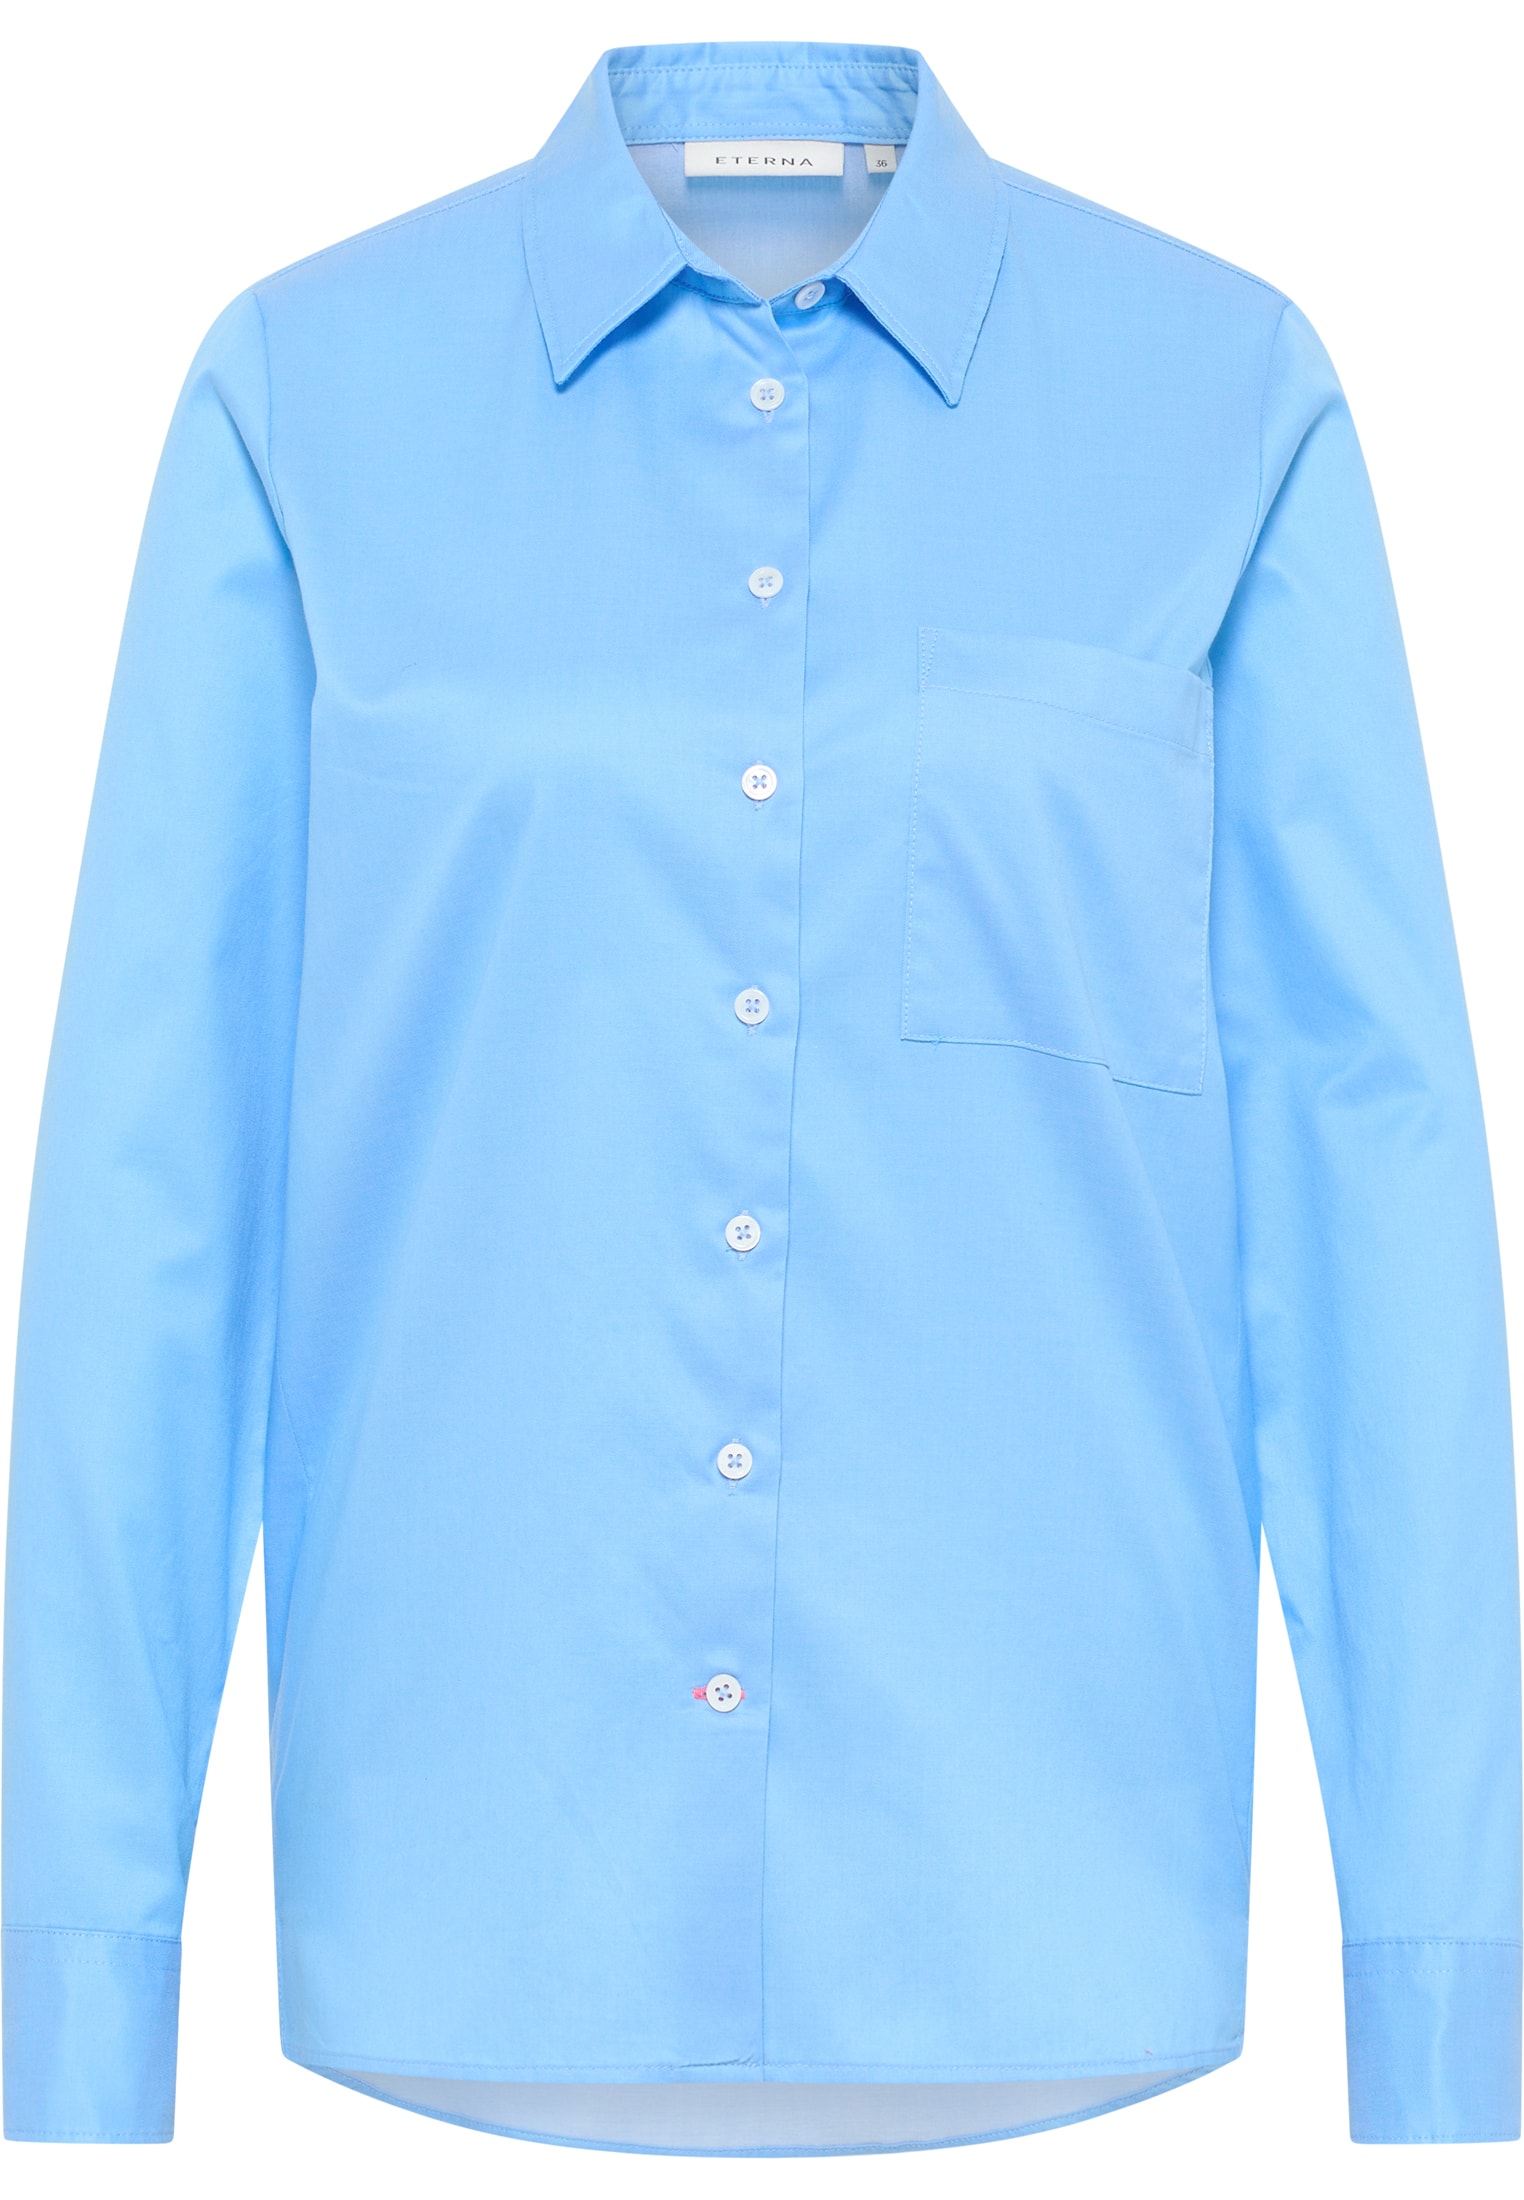 Bluse unifarben Soft Shirt | Luxury | | 38 2BL03851-01-41-38-1/1 | Langarm blau blau in